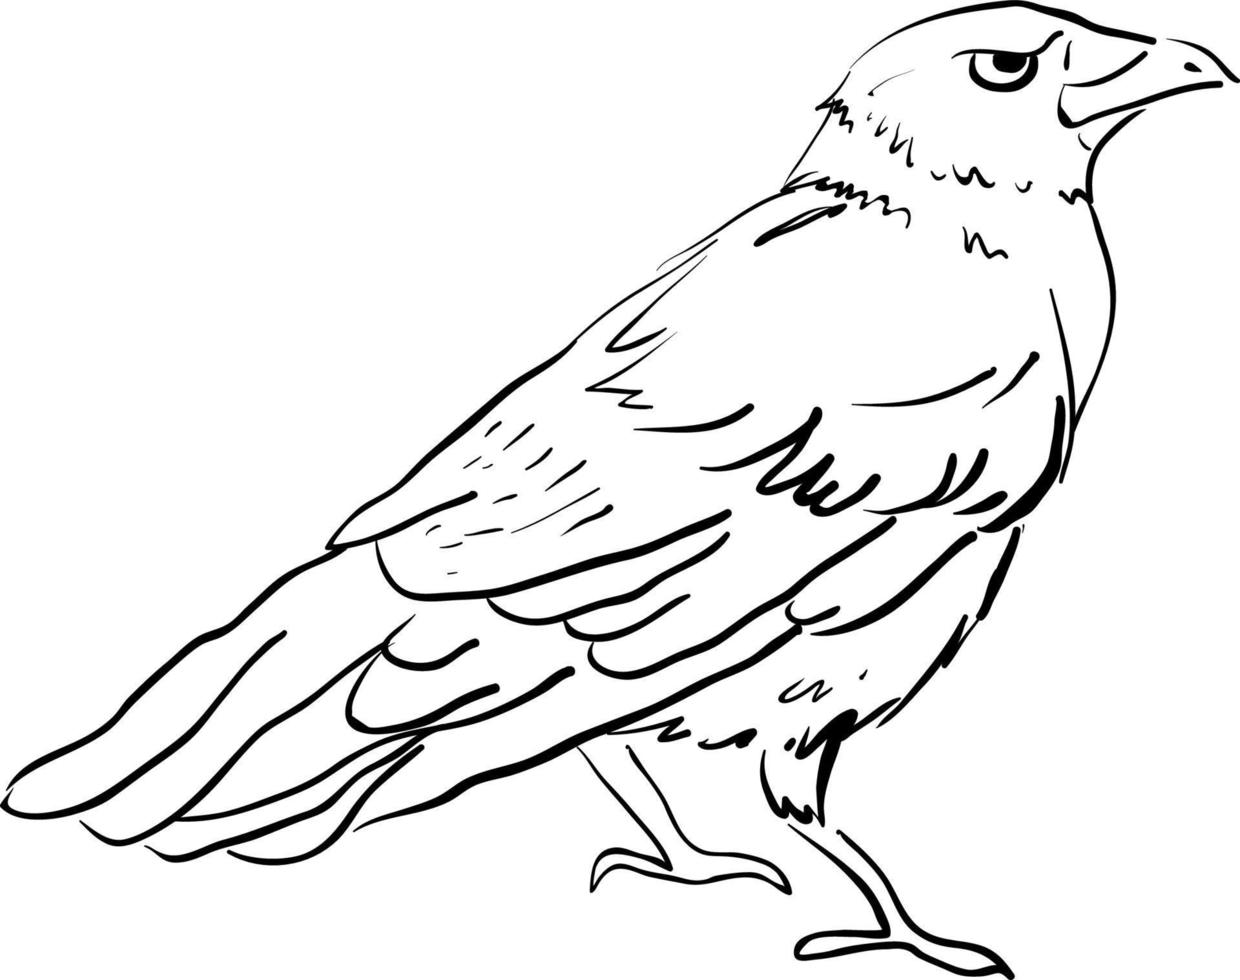 dibujo de cuervo, ilustración, vector sobre fondo blanco.